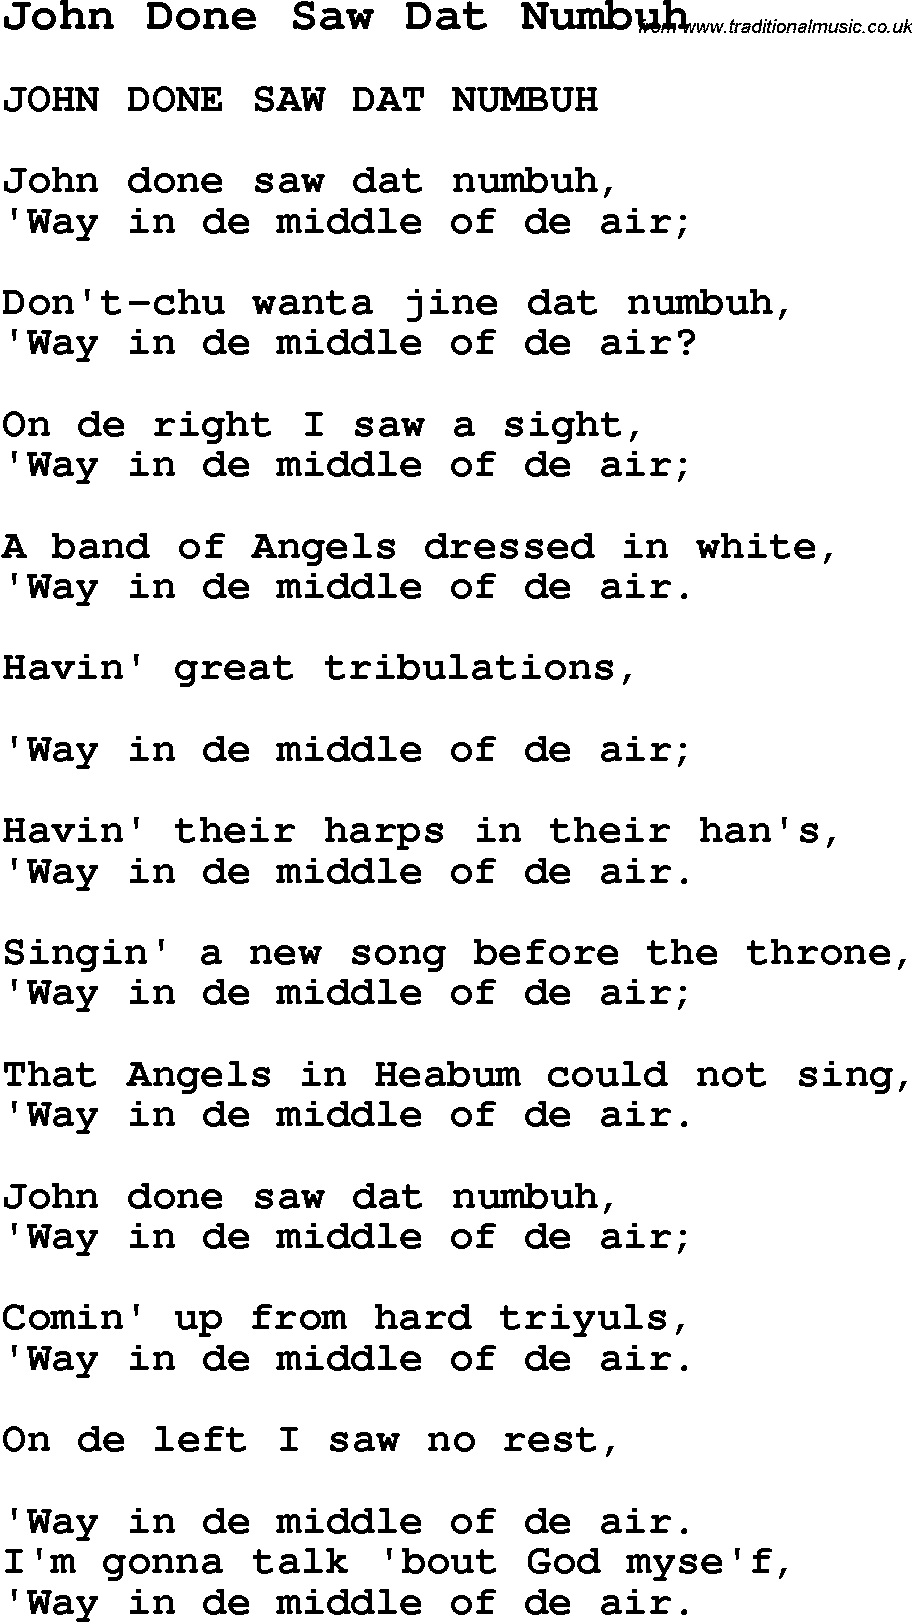 Negro Spiritual Song Lyrics for John Done Saw Dat Numbuh